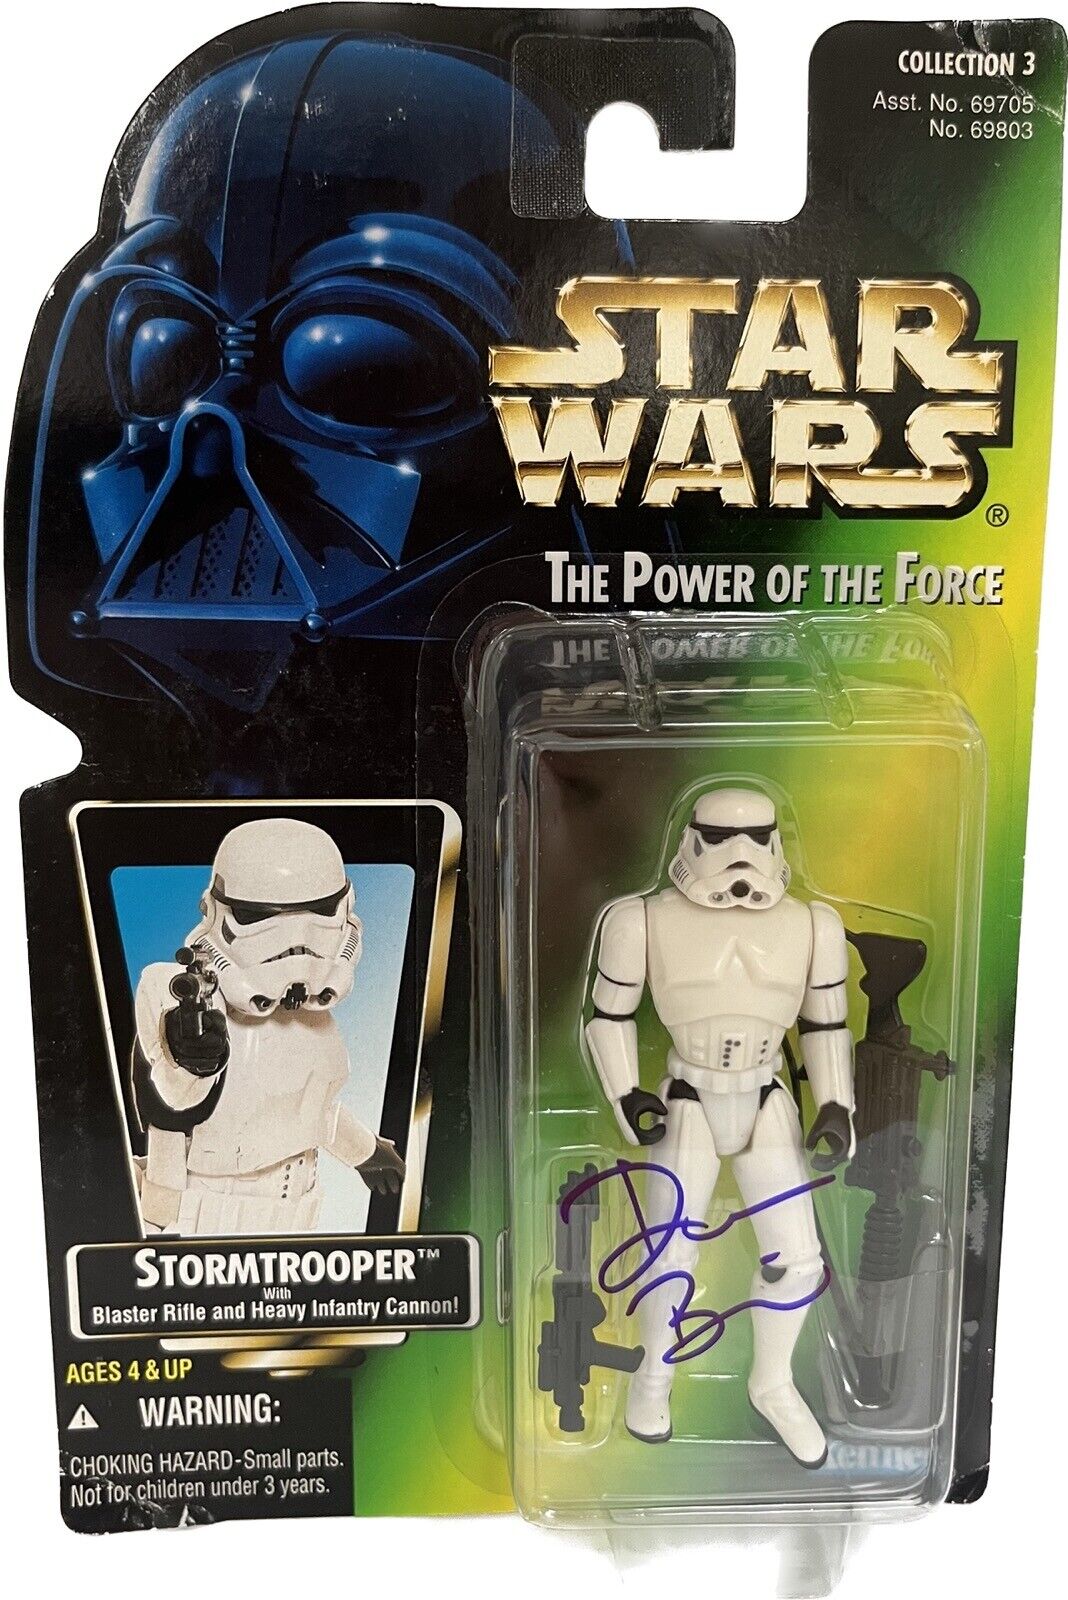 Don Bies Stormtrooper Star Wars ESB Signed POTF Action Figure BAS